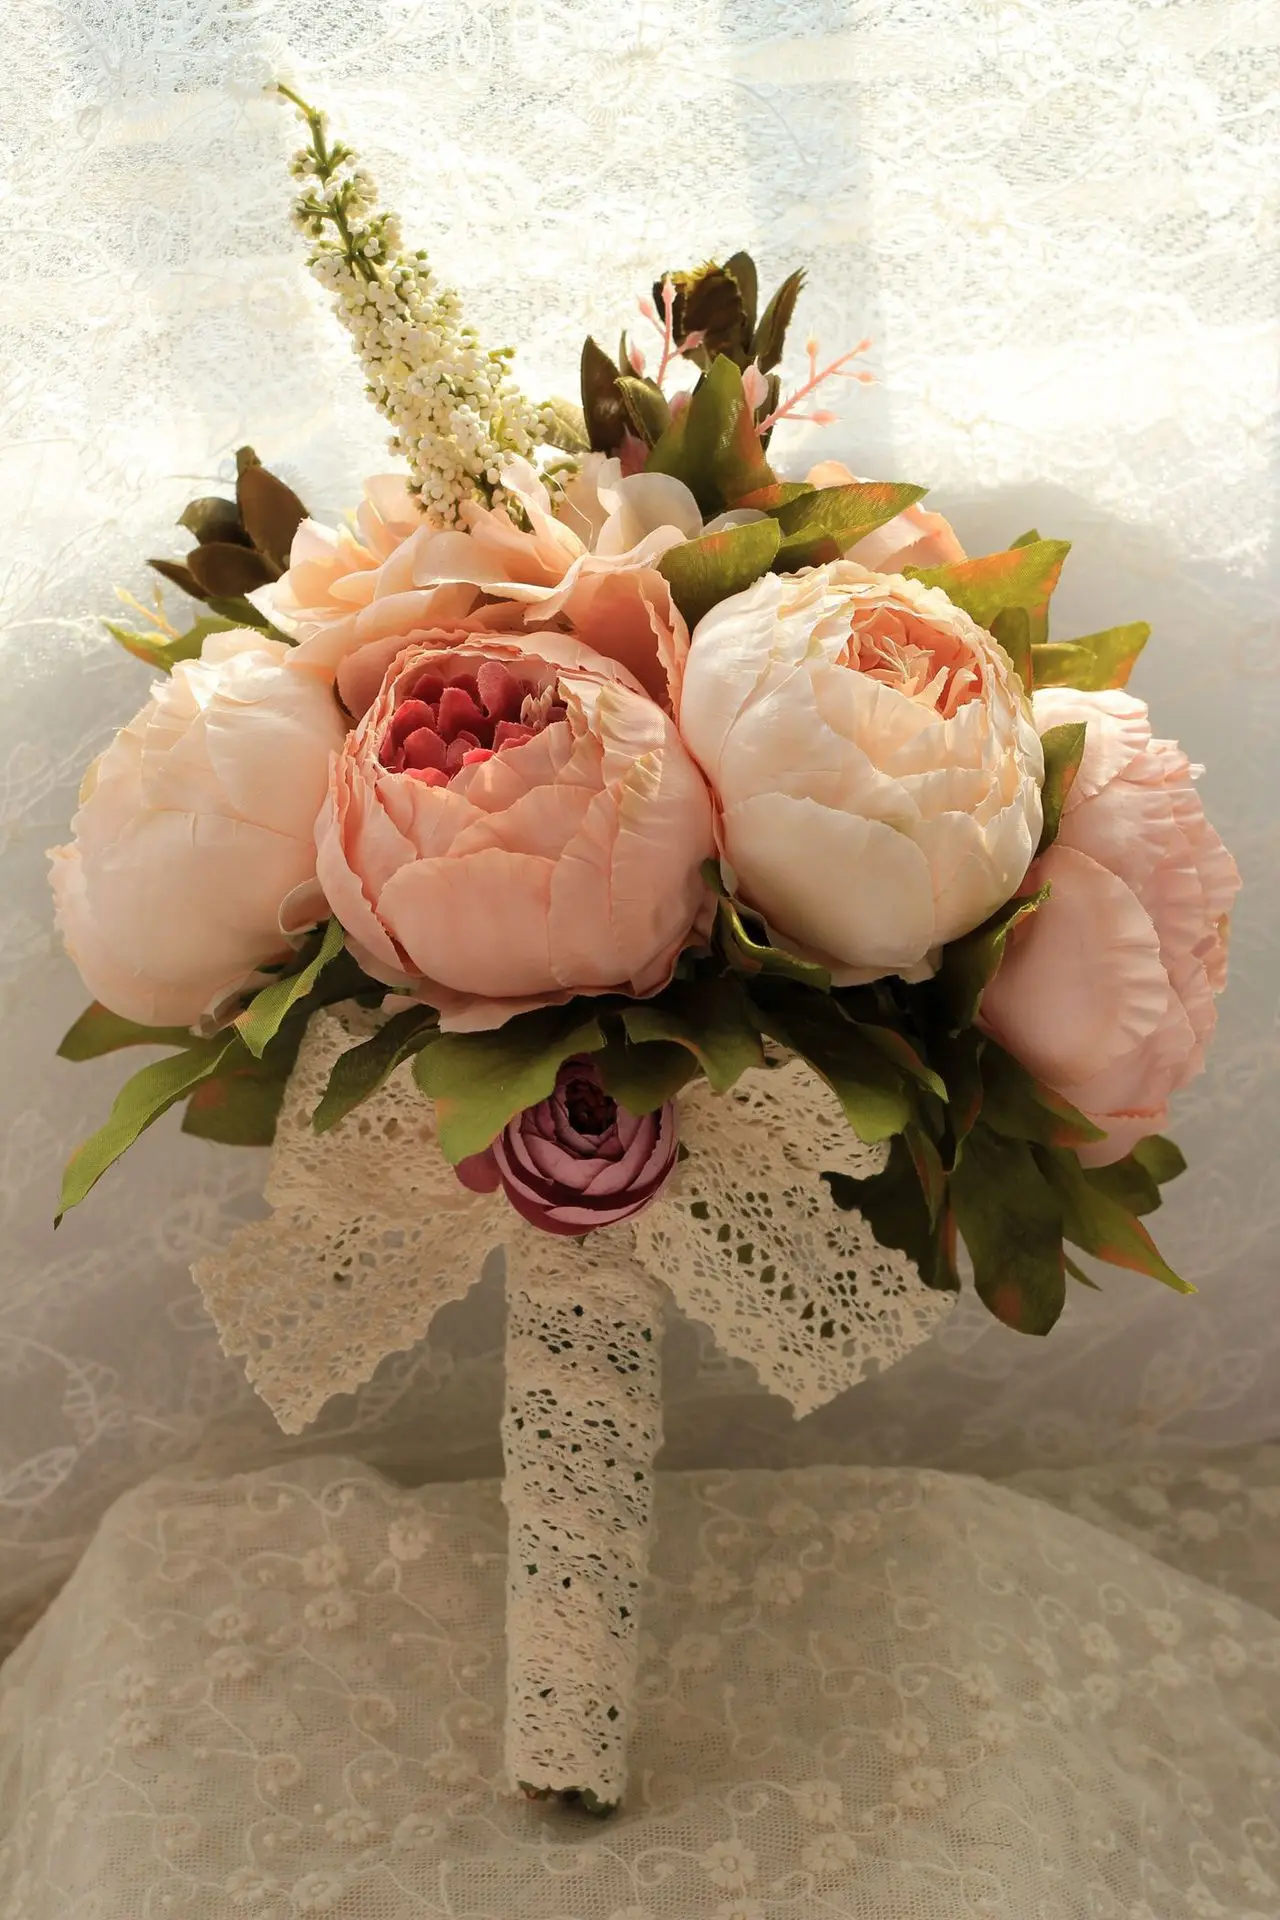 Свадебный букет s держатель Розы Свадебные цветы искусственный букет невесты аксессуары для невесты ручной цветок